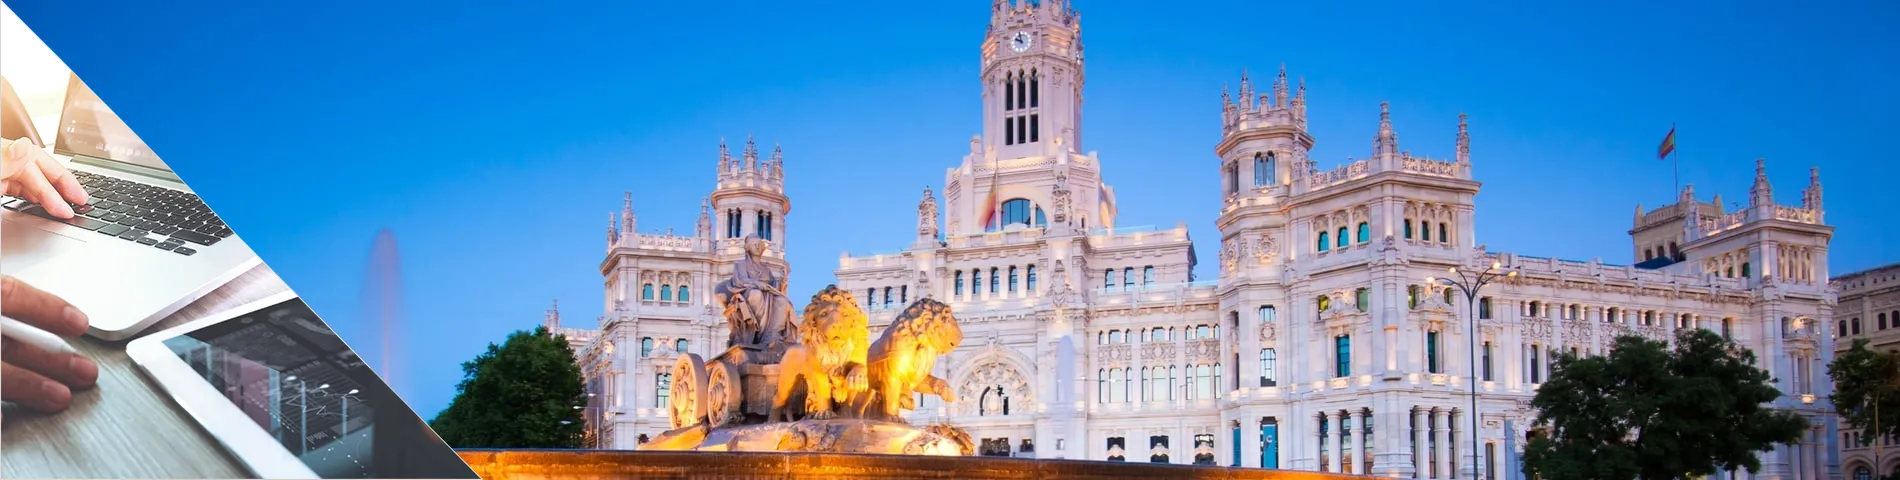 Мадрид - Испанский & цифровые средстава коммуникации